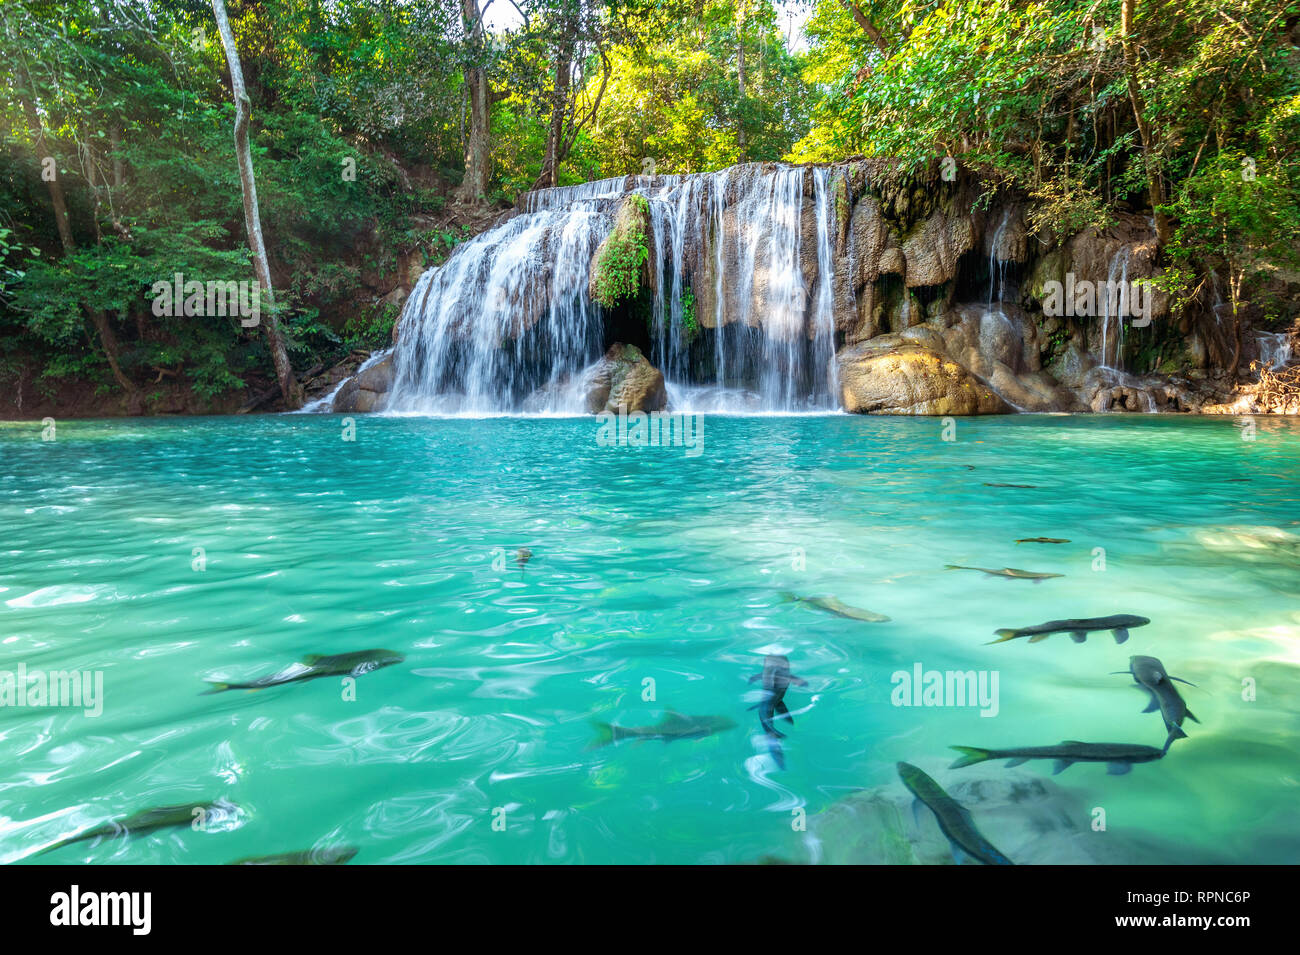 Erawan Wasserfall in Thailand. Schönen Wasserfall mit Emerald Pool in der  Natur Stockfotografie - Alamy